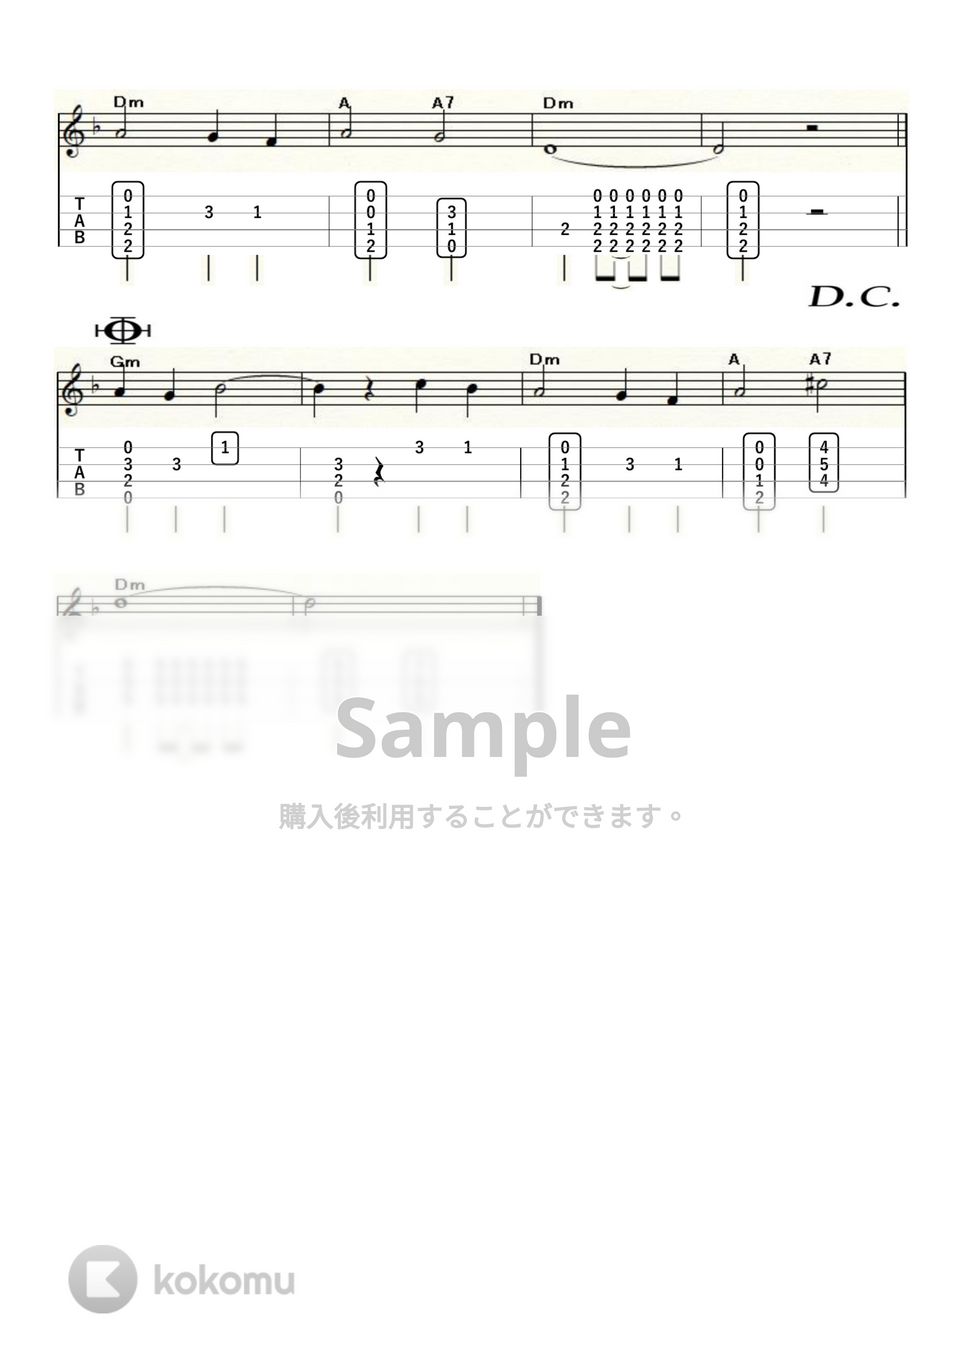 ソロヴィヨフ - モスクワ郊外の夕べ (ｳｸﾚﾚｿﾛ/High-G・Low-G/中級) by ukulelepapa